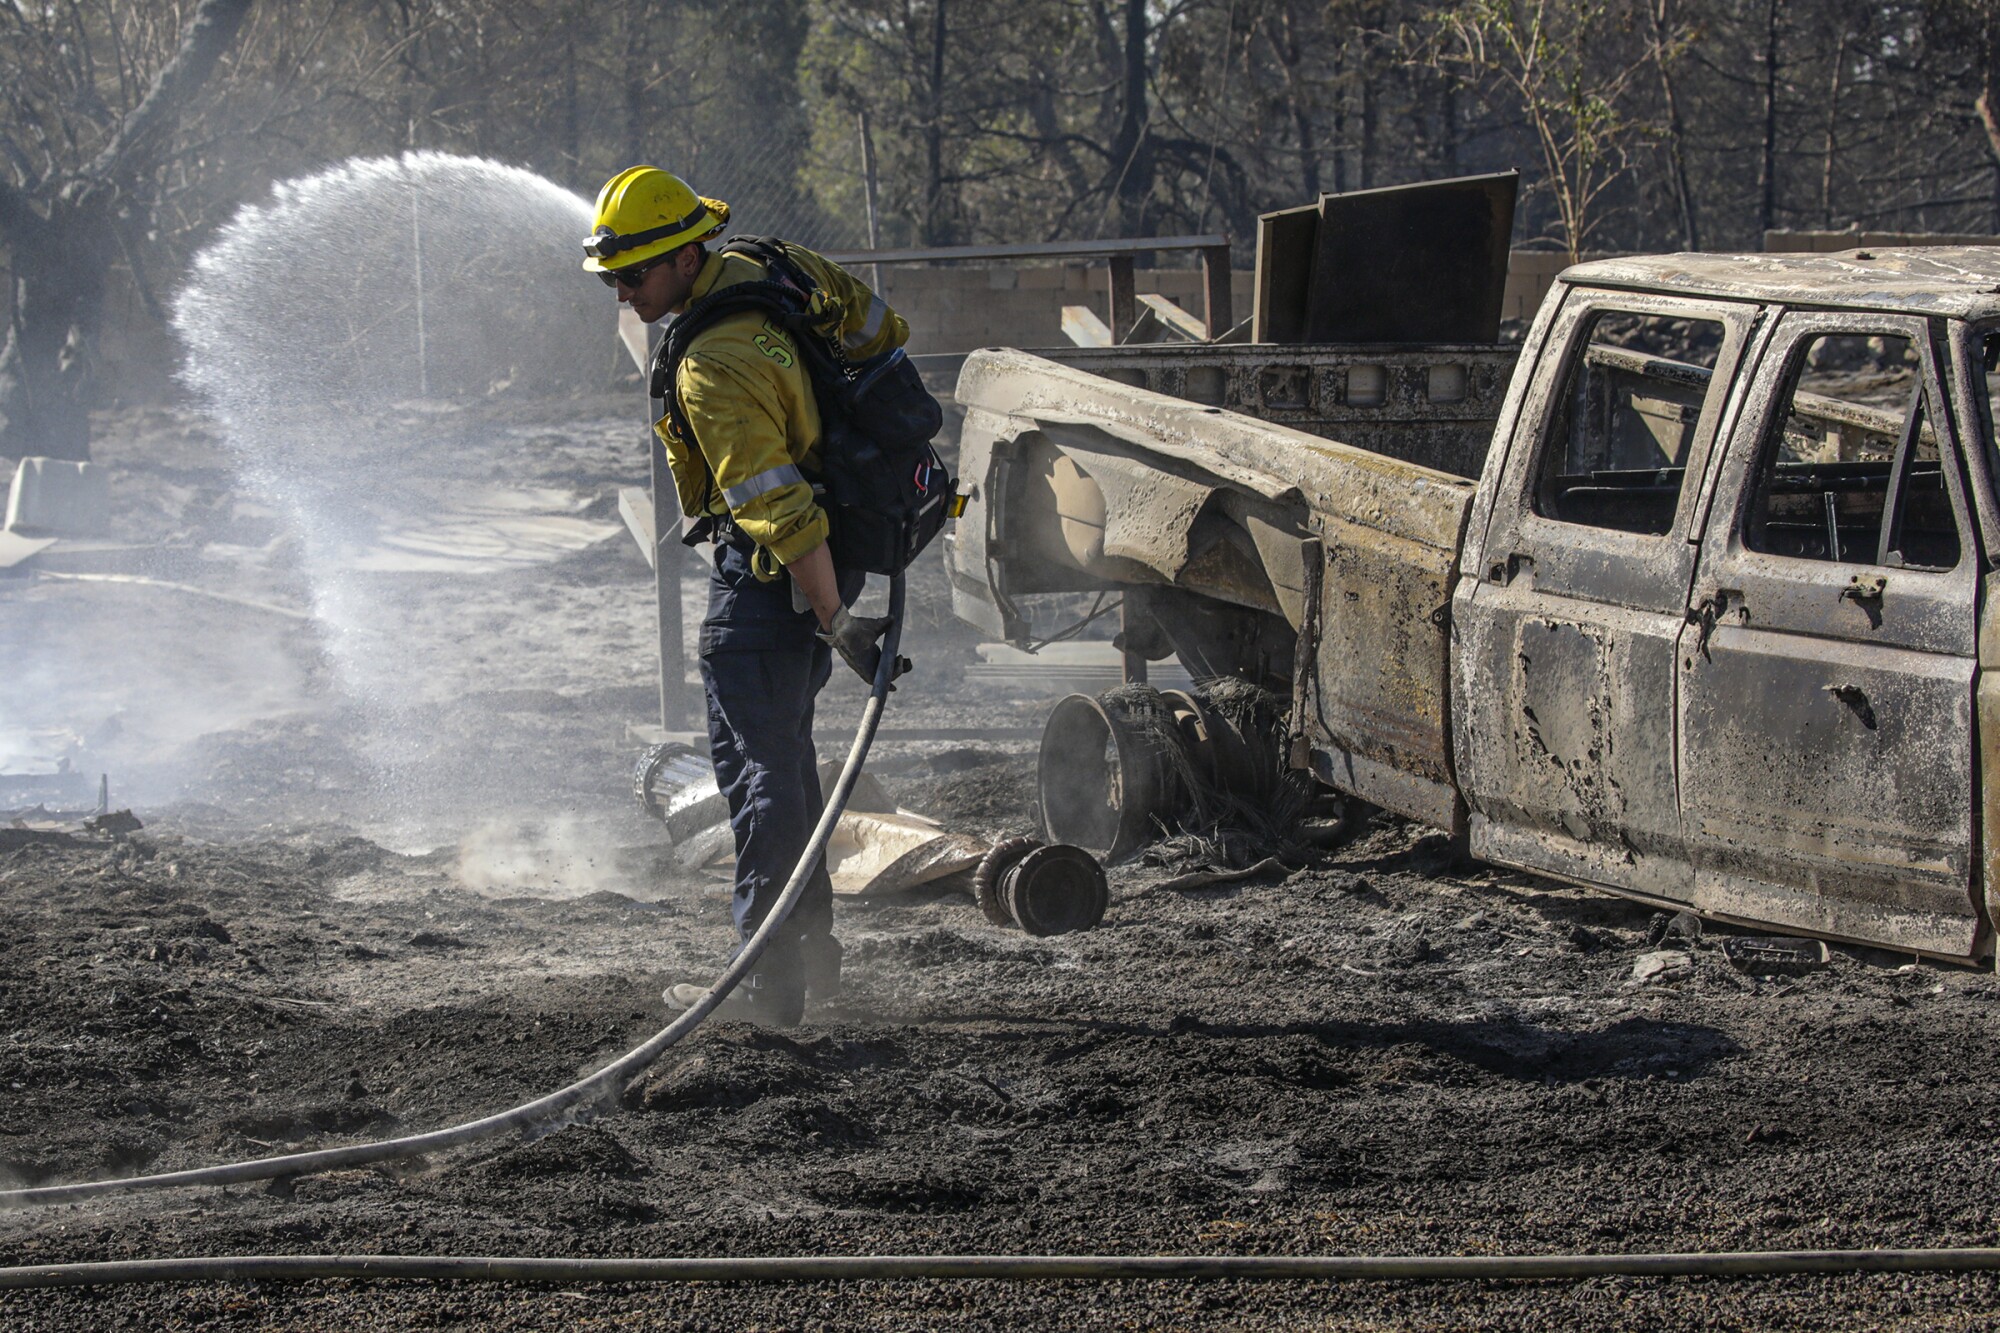 San Bernardino County firefighter Mathew Safdeye hoses down hot spots in Lytle Creek area